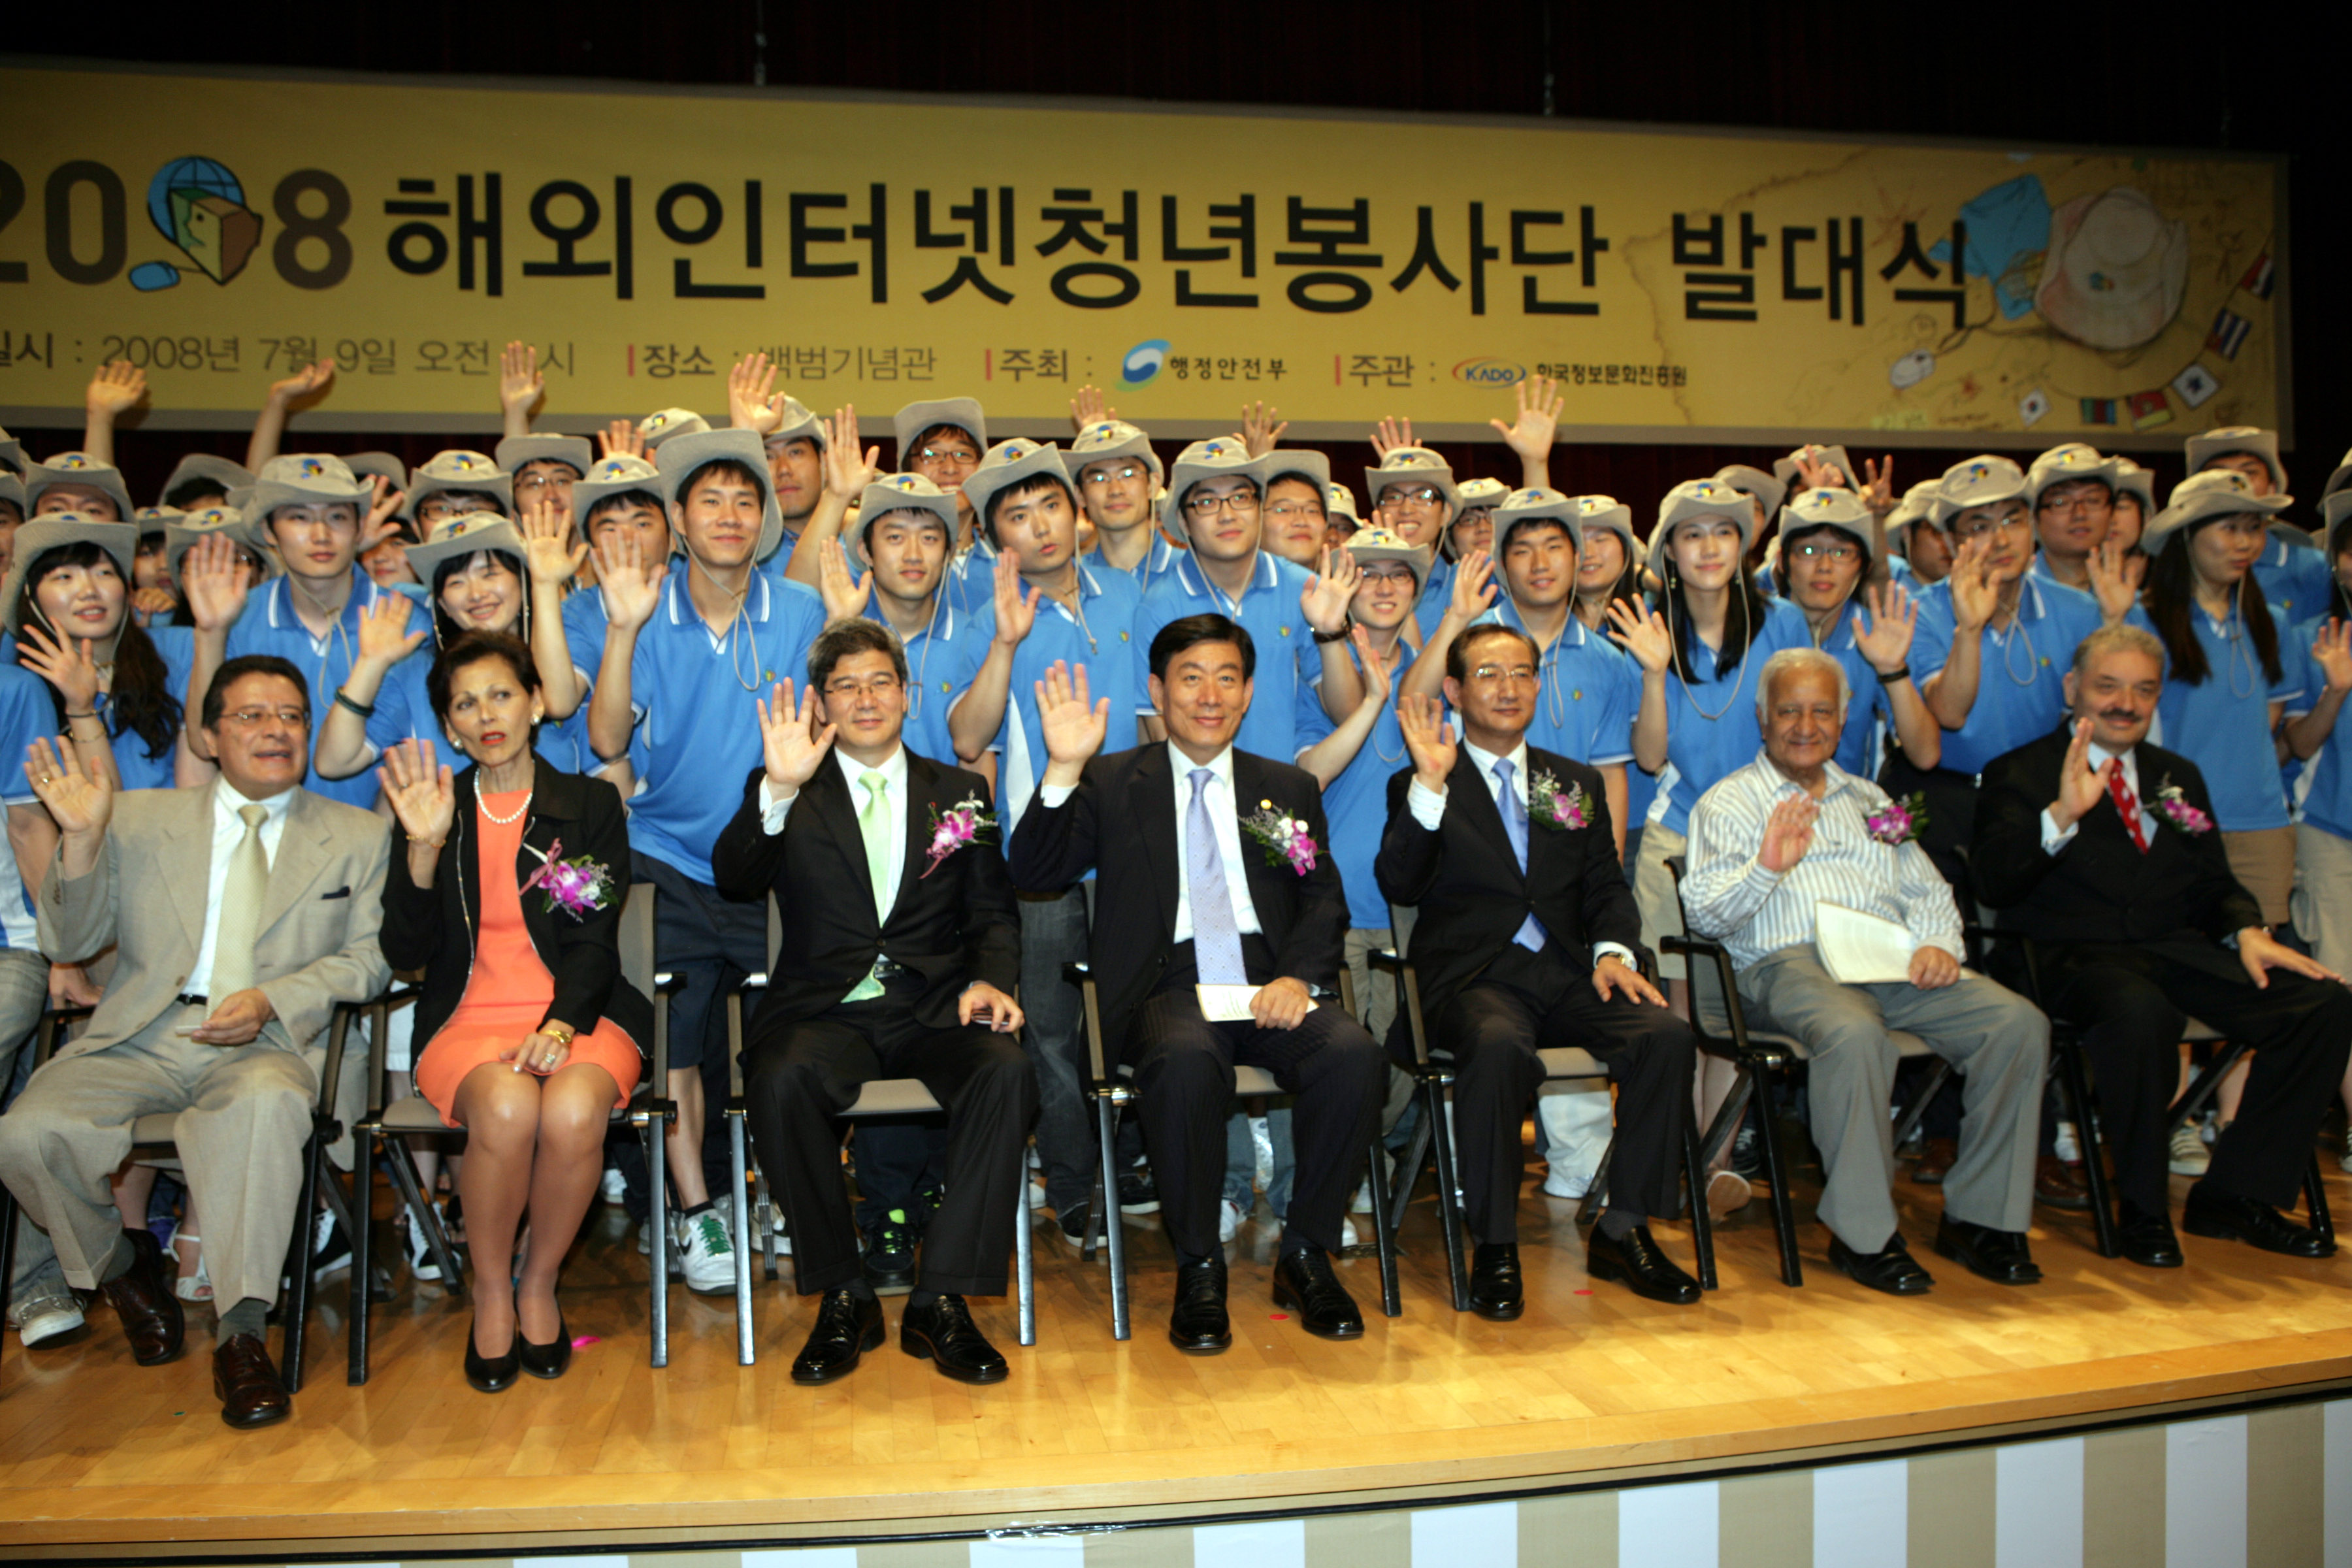 2008 해외인터넷 청년봉사단 발대식